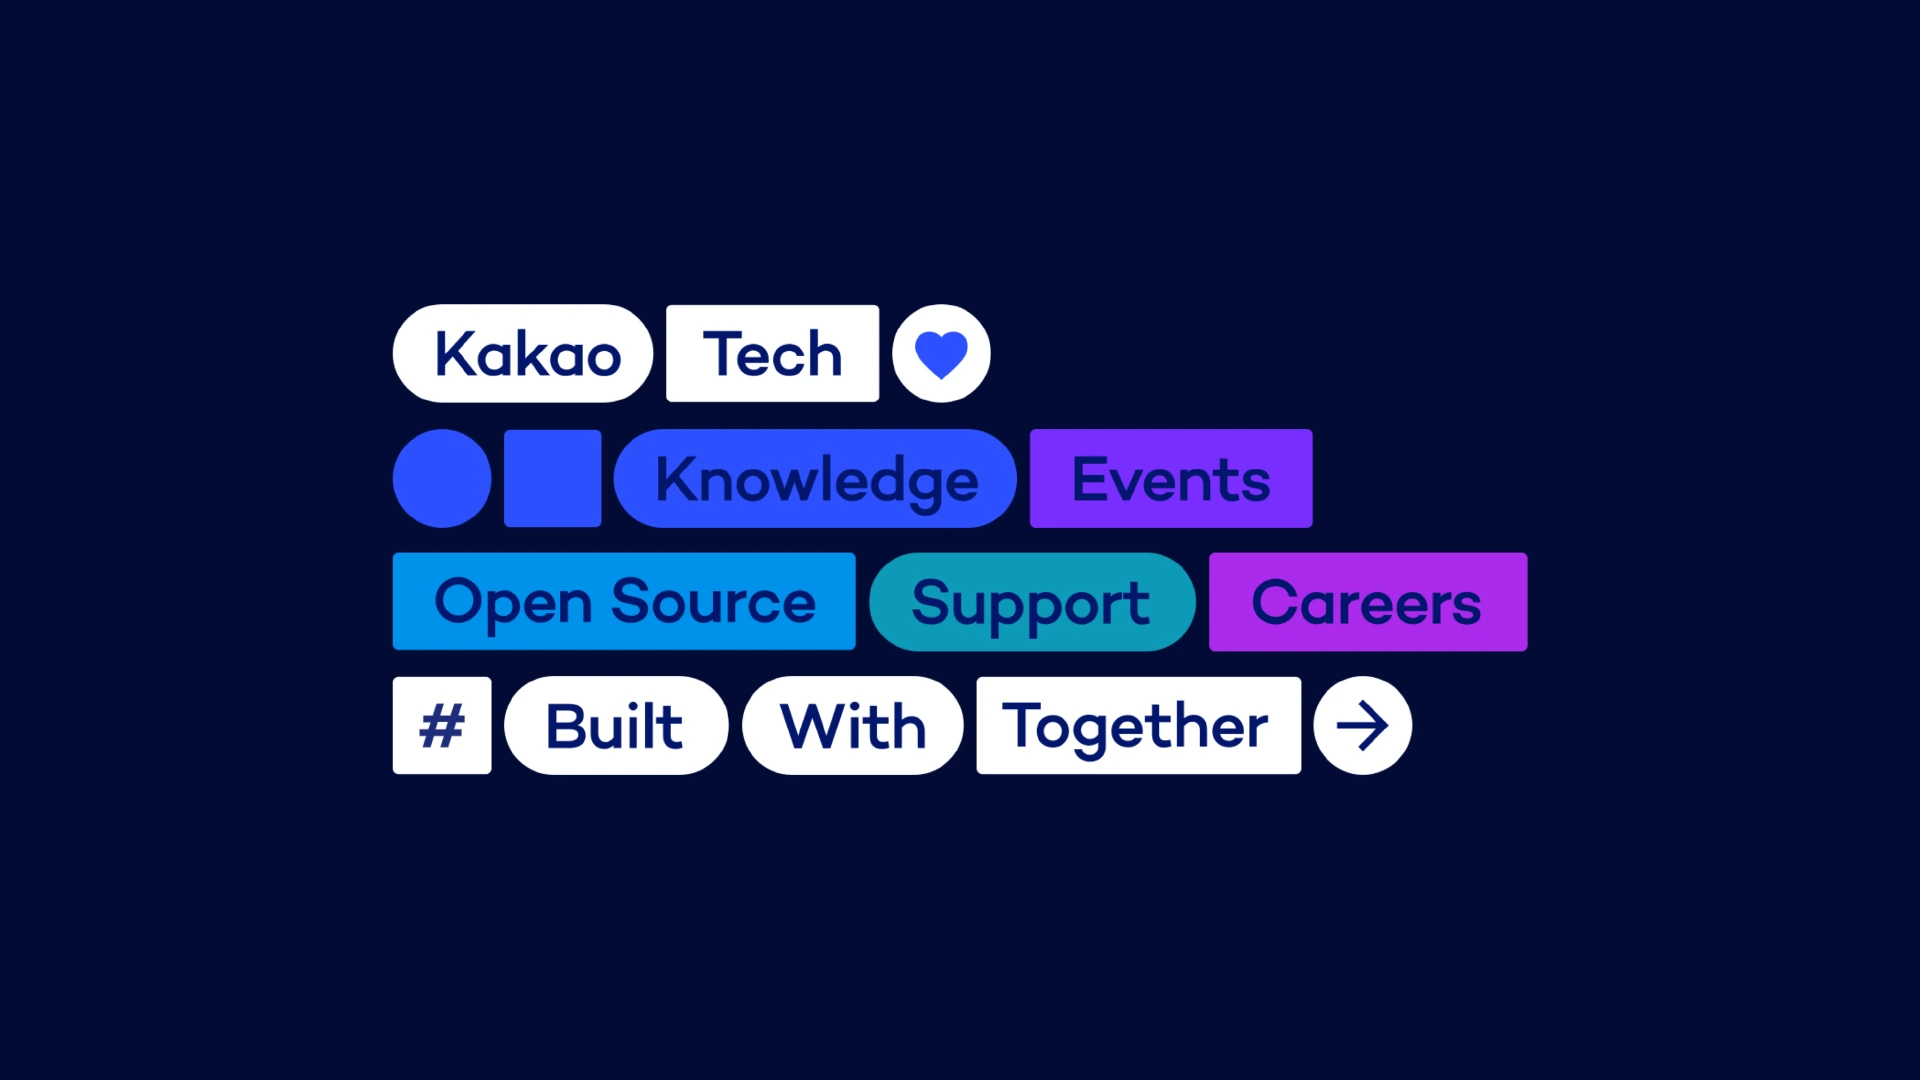 카카오 테크사이트의 지향점을 도형 안에 쓴 kakao, Tech, Knowledge, Events, Open Source, Support, Careers, Built, With, Together 등의 글씨로 표현 